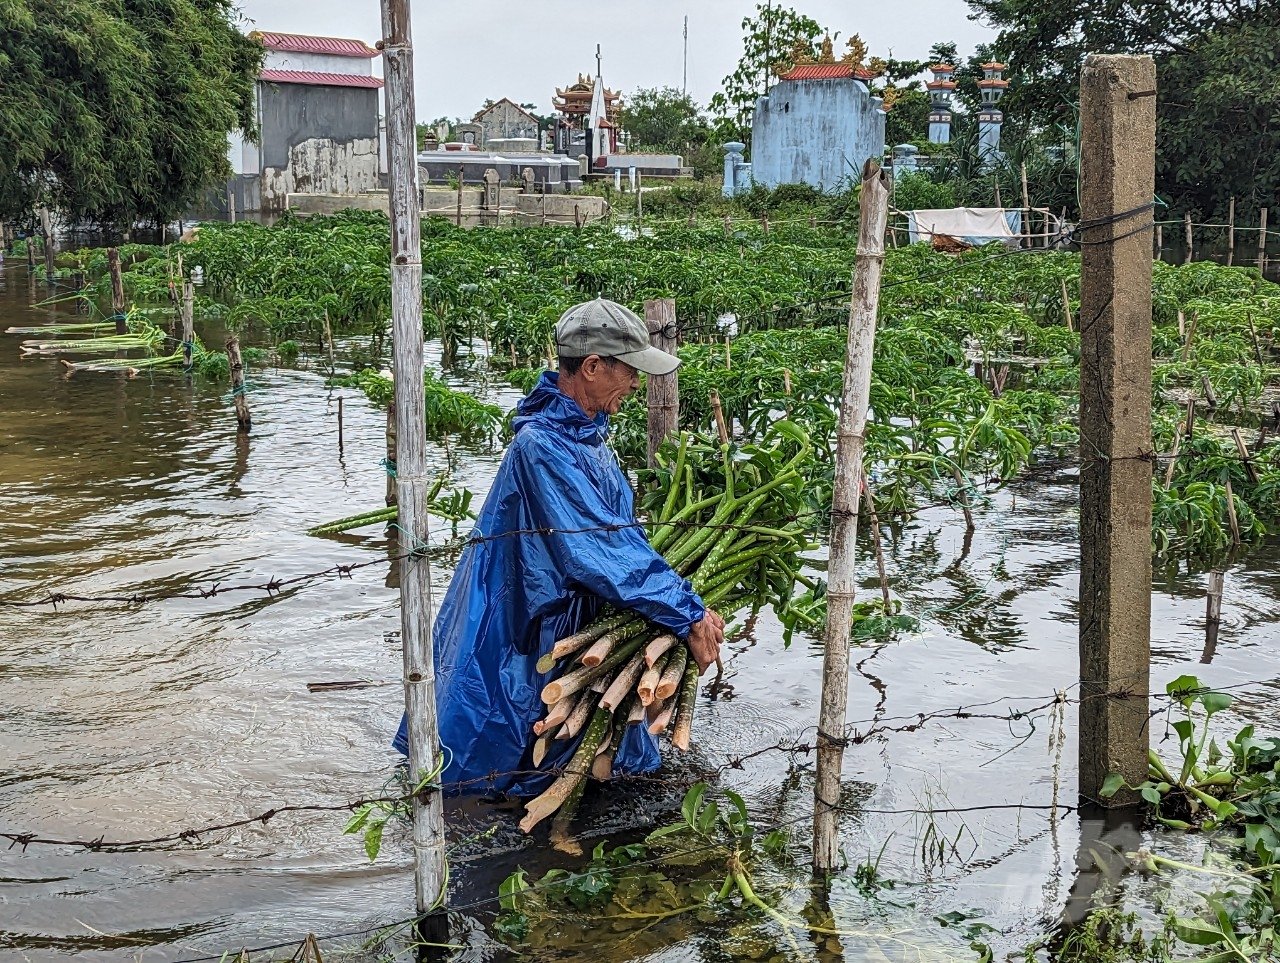 Tại thôn Niêm Phò (xã Quảng Thọ, huyện Quảng Điền), nhiều nông dân ngâm mình dưới nước để thu hoạch cây chột nưa. Đây là loại cây trồng đặc trưng ở địa phương đã đi vào thơ ca với bài 'Con cá, chột nưa' của nhà thơ Tố Hữu.